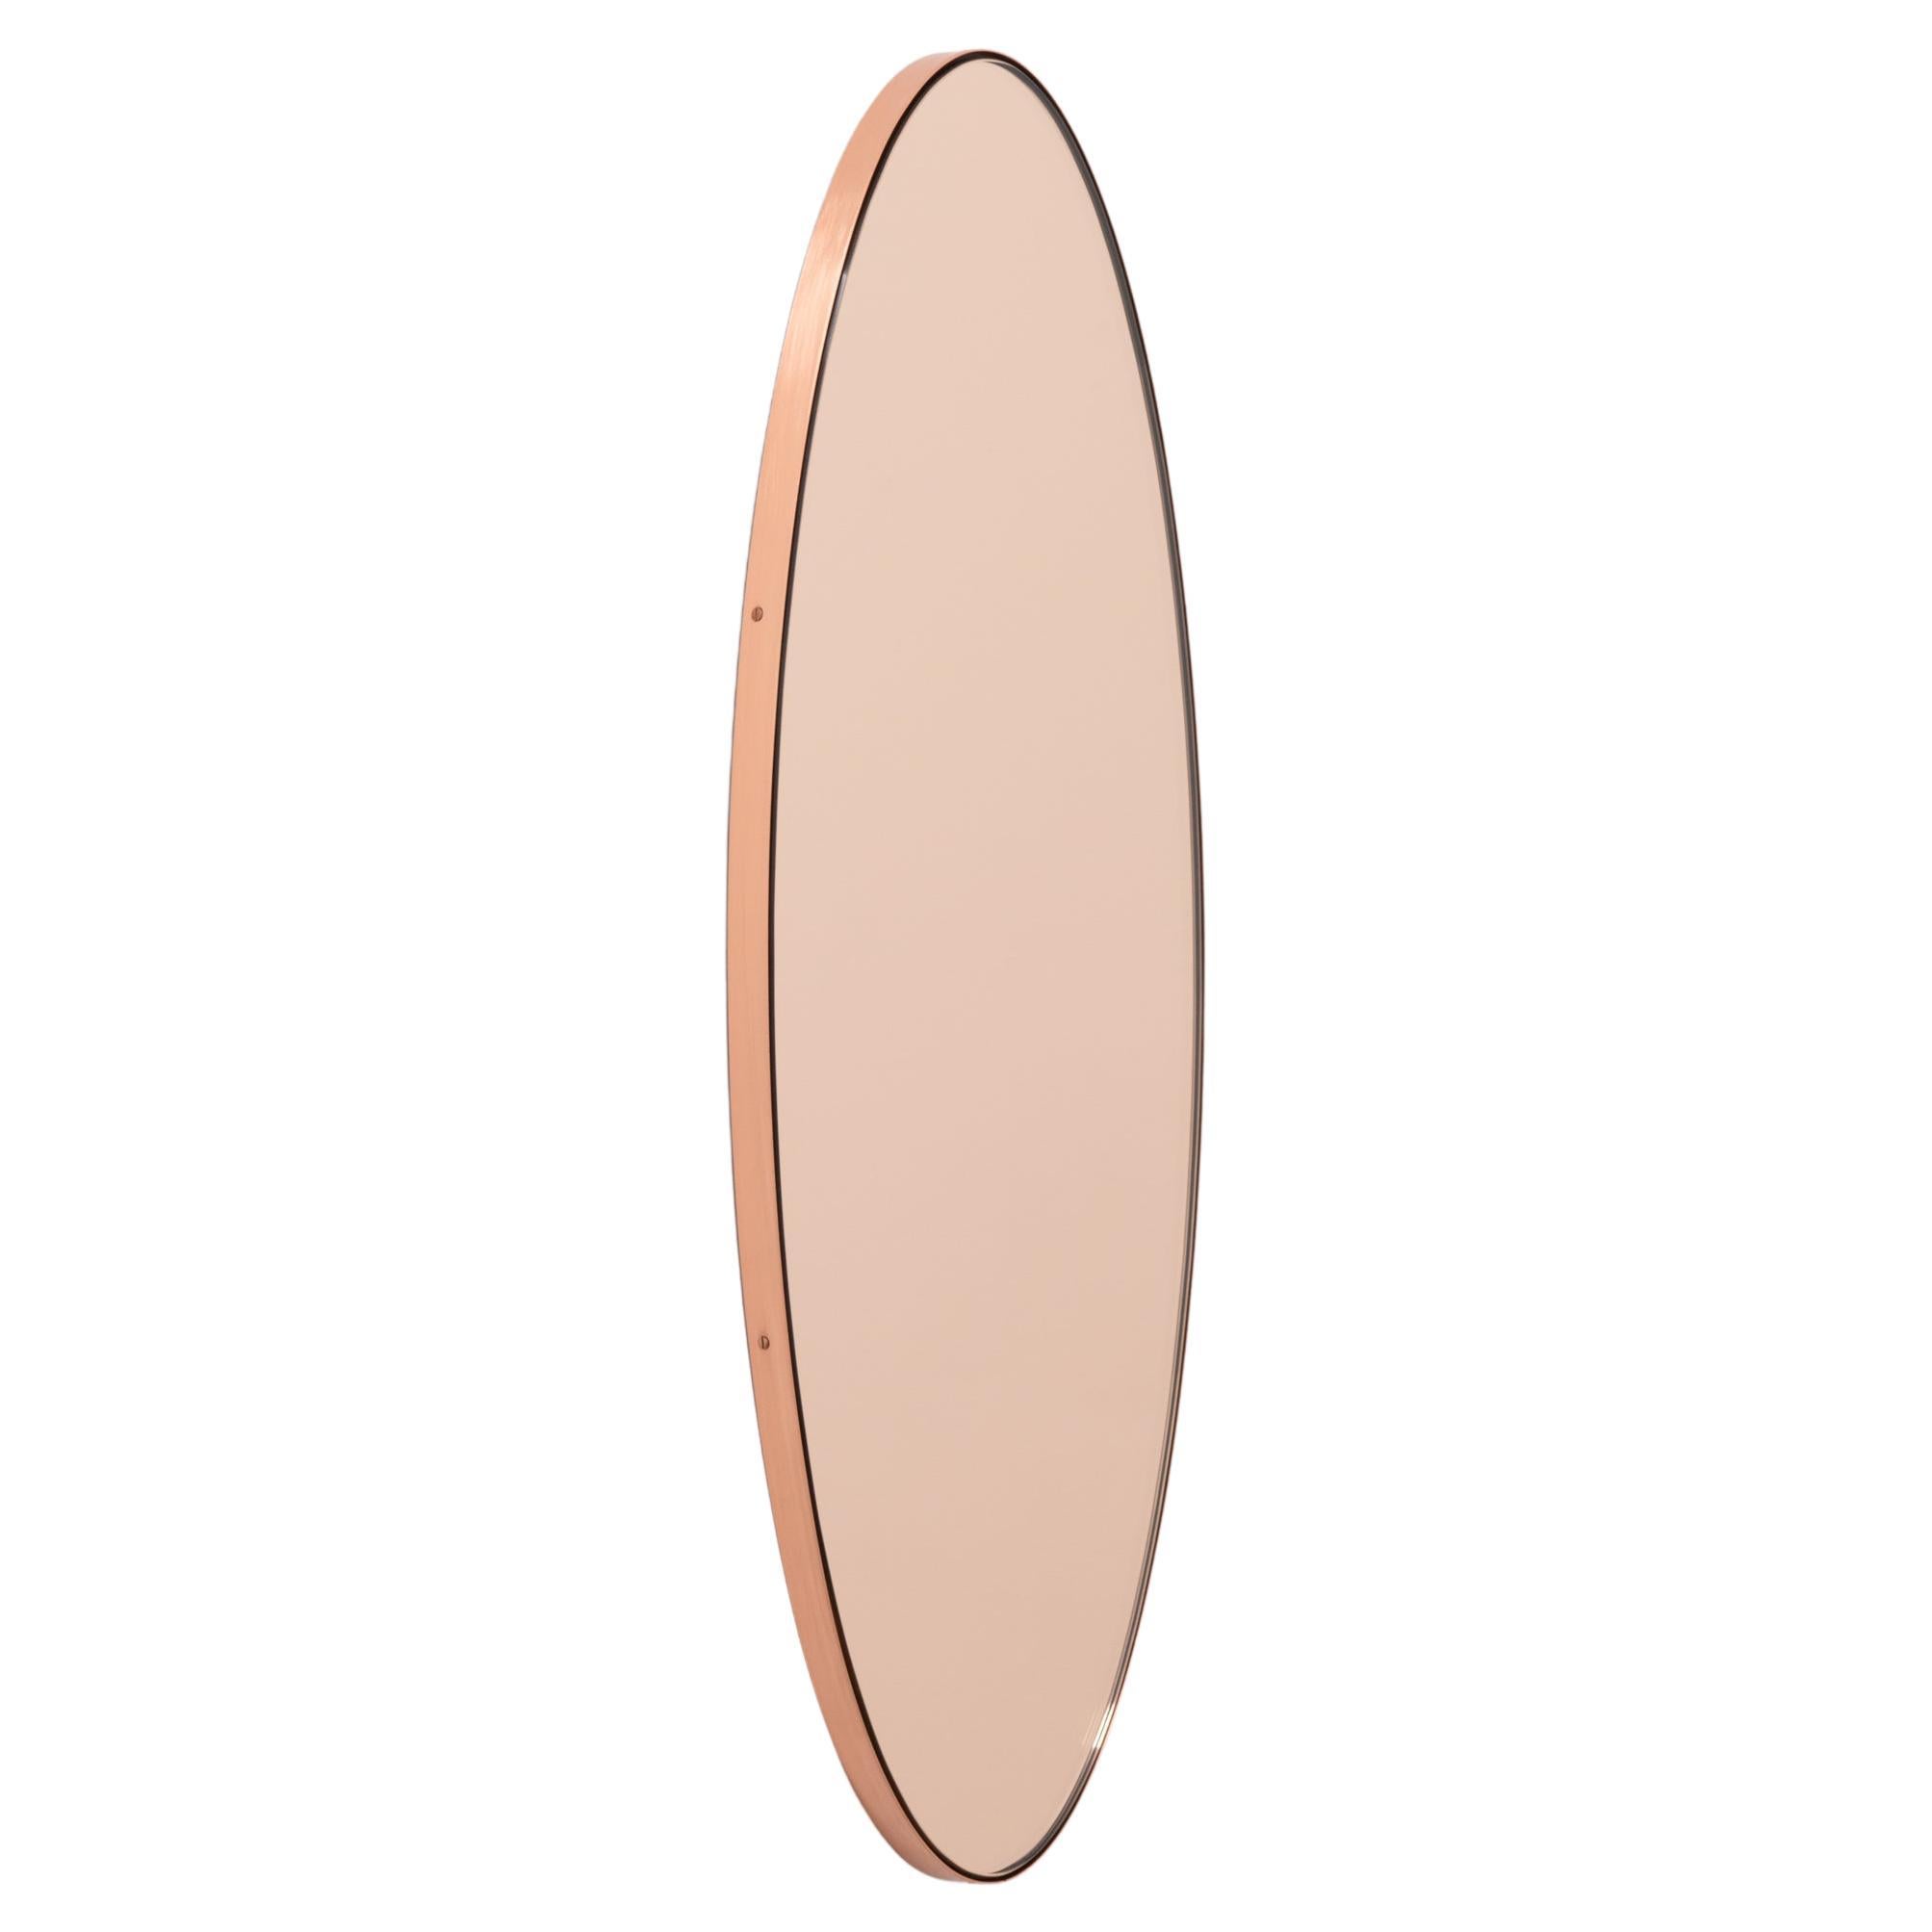 Ovalis Oval Pfirsich-Roségold Handgefertigter Spiegel mit Kupferrahmen, groß